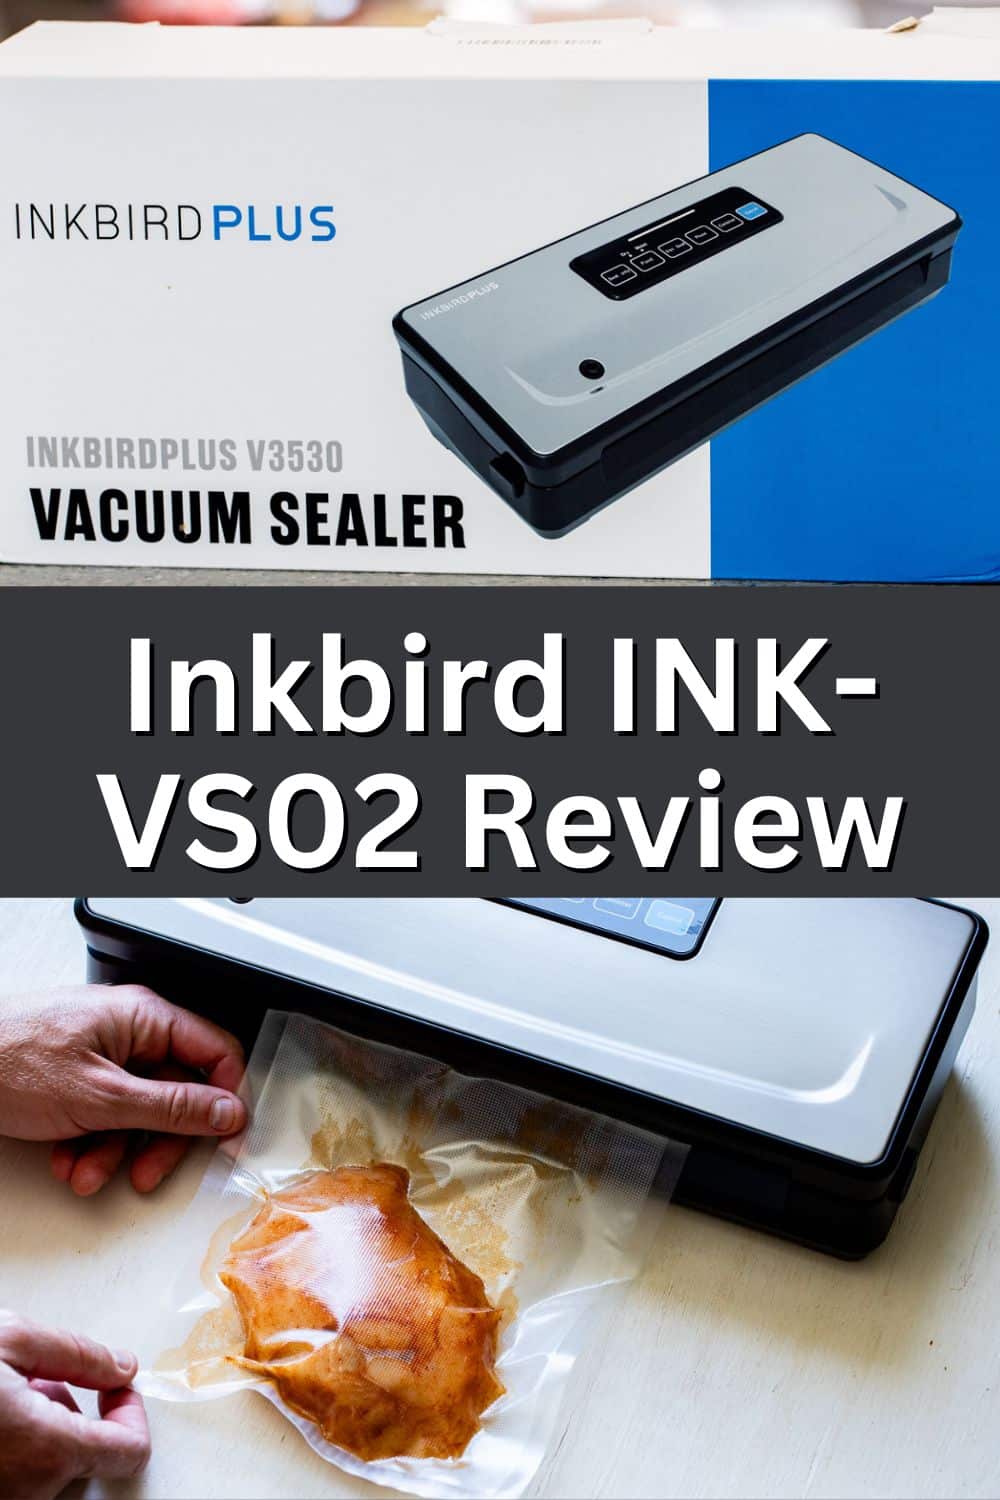 INKBIRDPLUS Vacuum Sealer Review